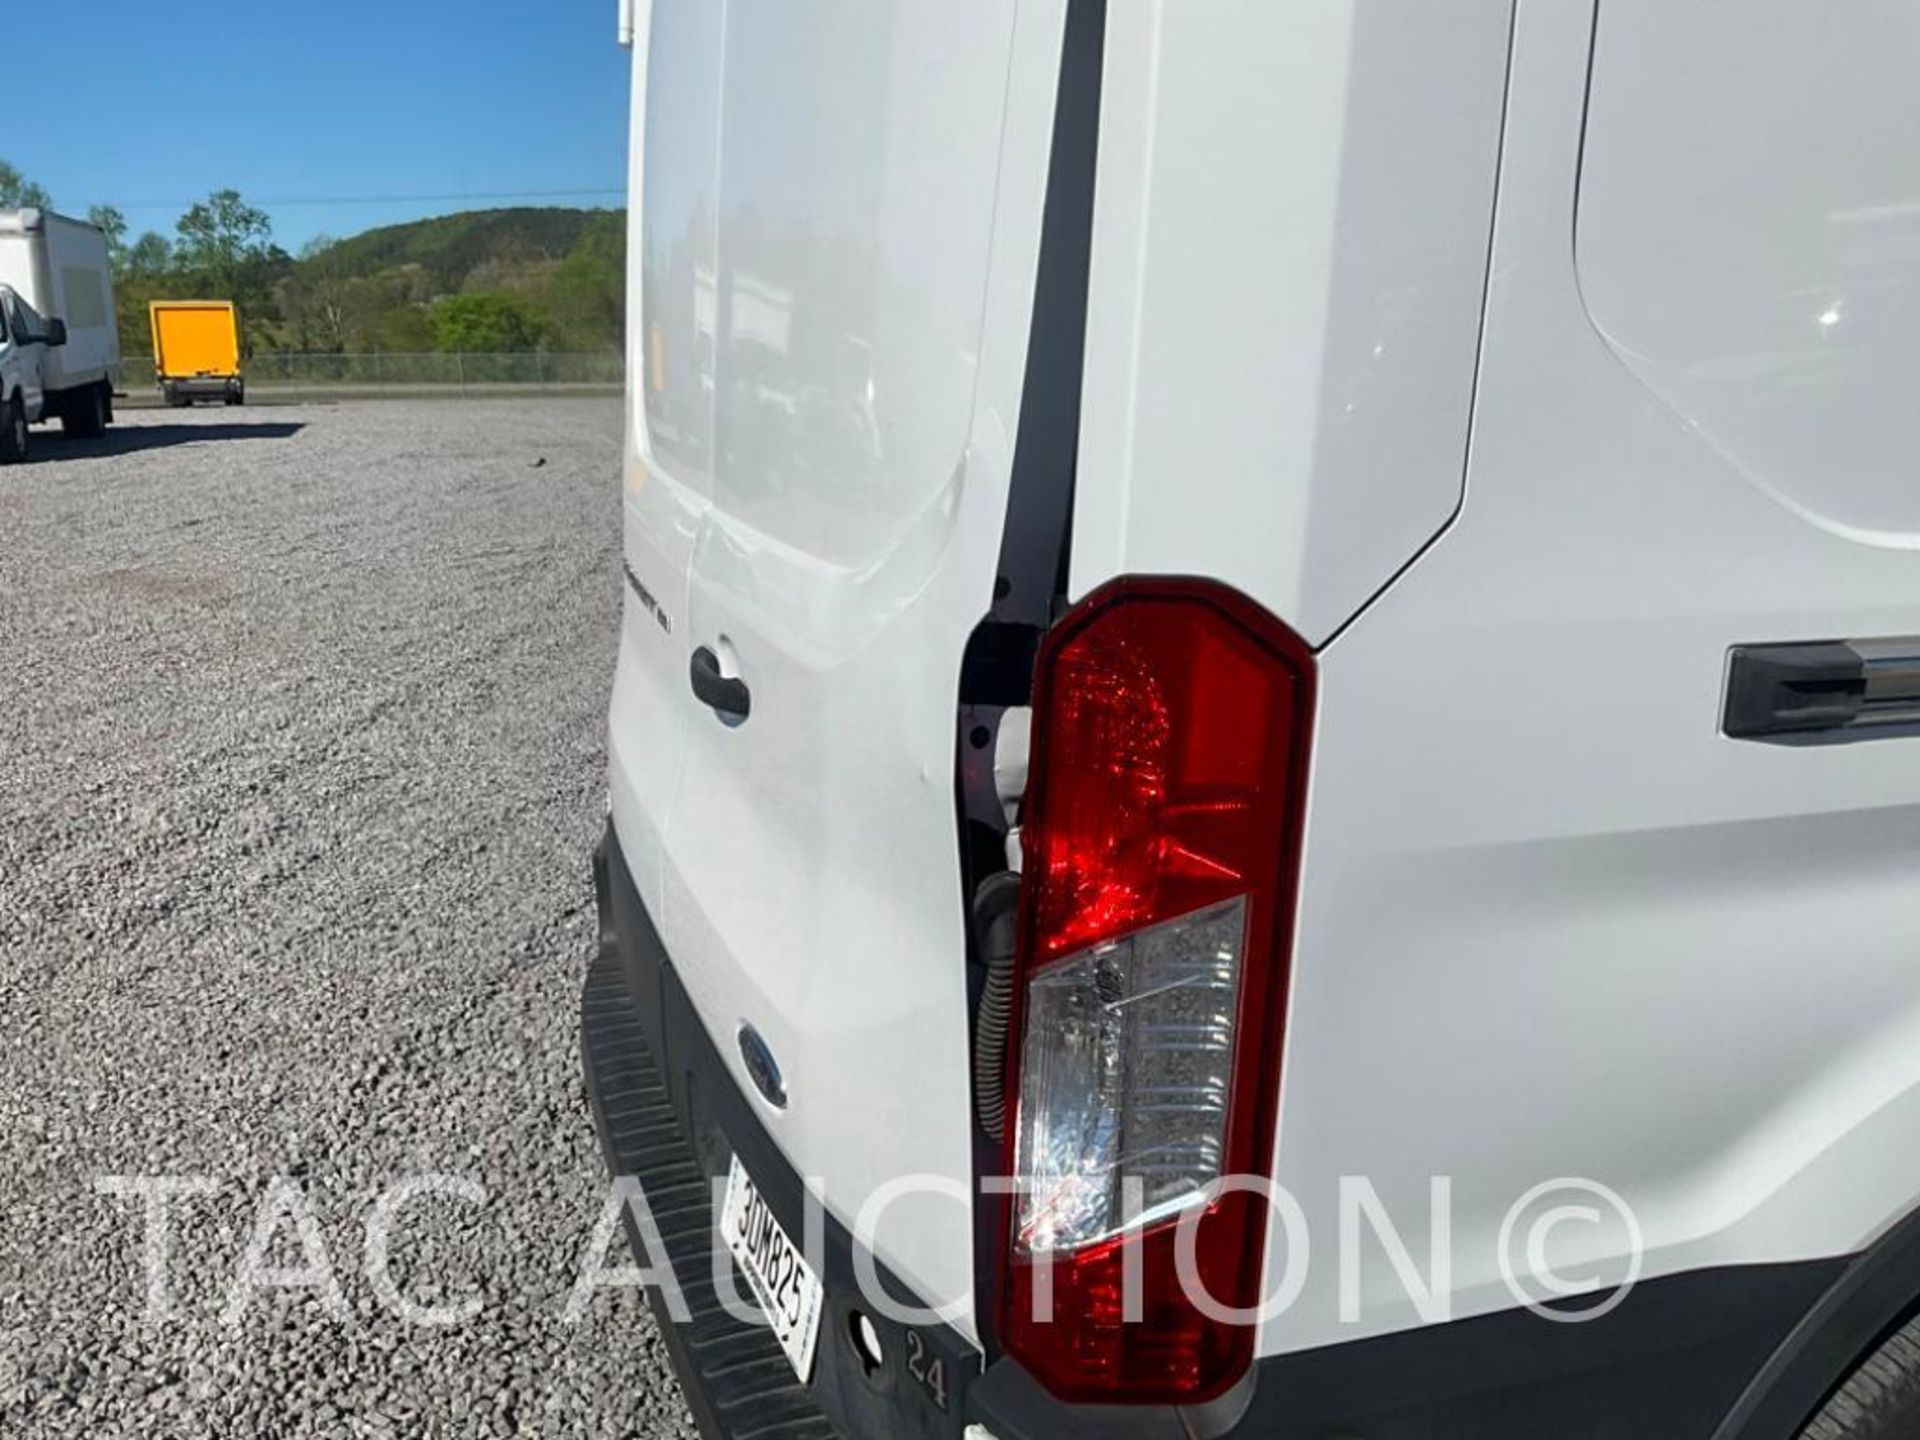 2019 Ford Transit 150 Cargo Van - Image 48 of 52